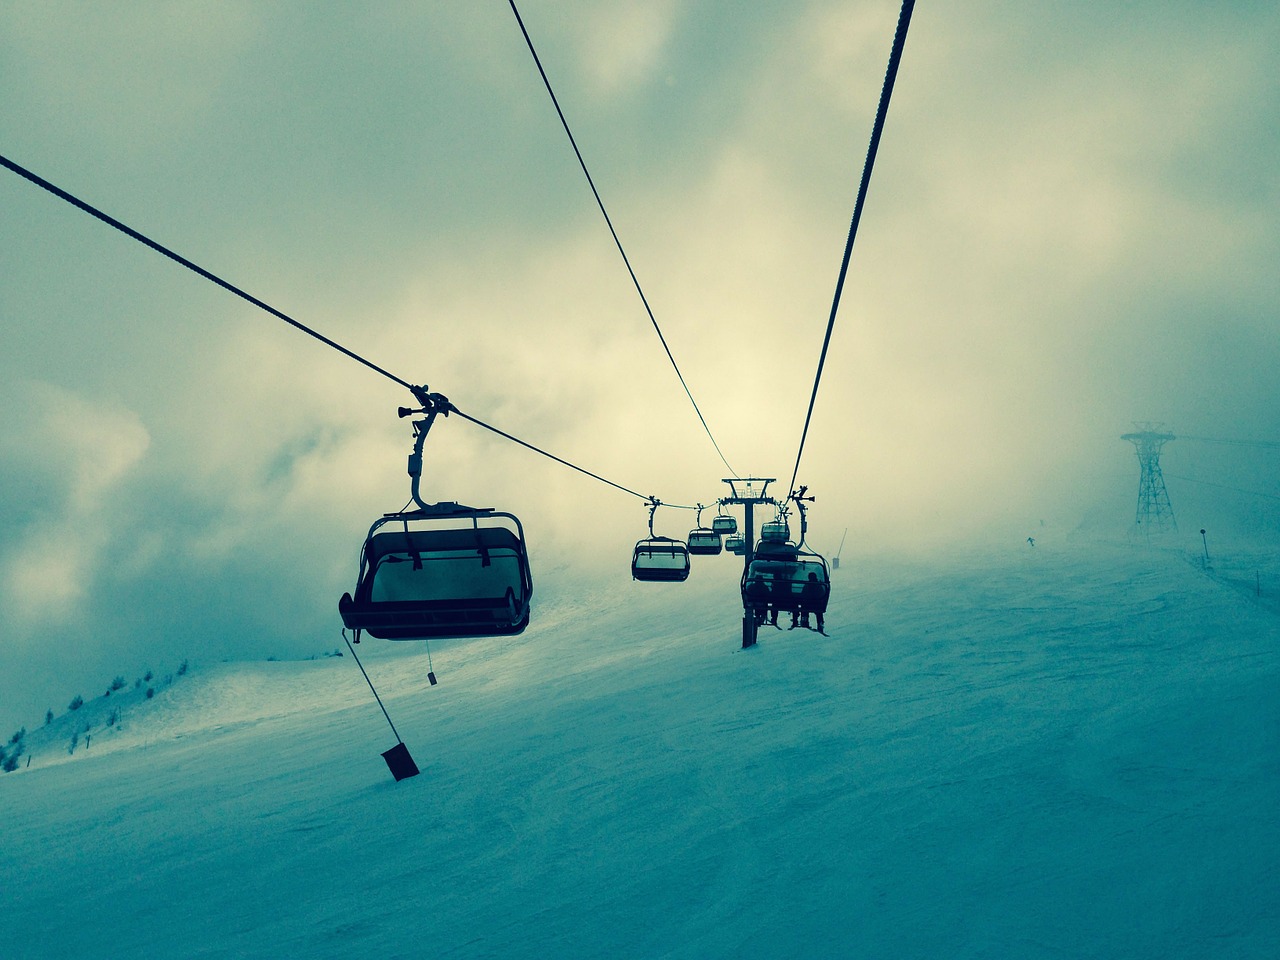 ski-lift ski lift ski free photo